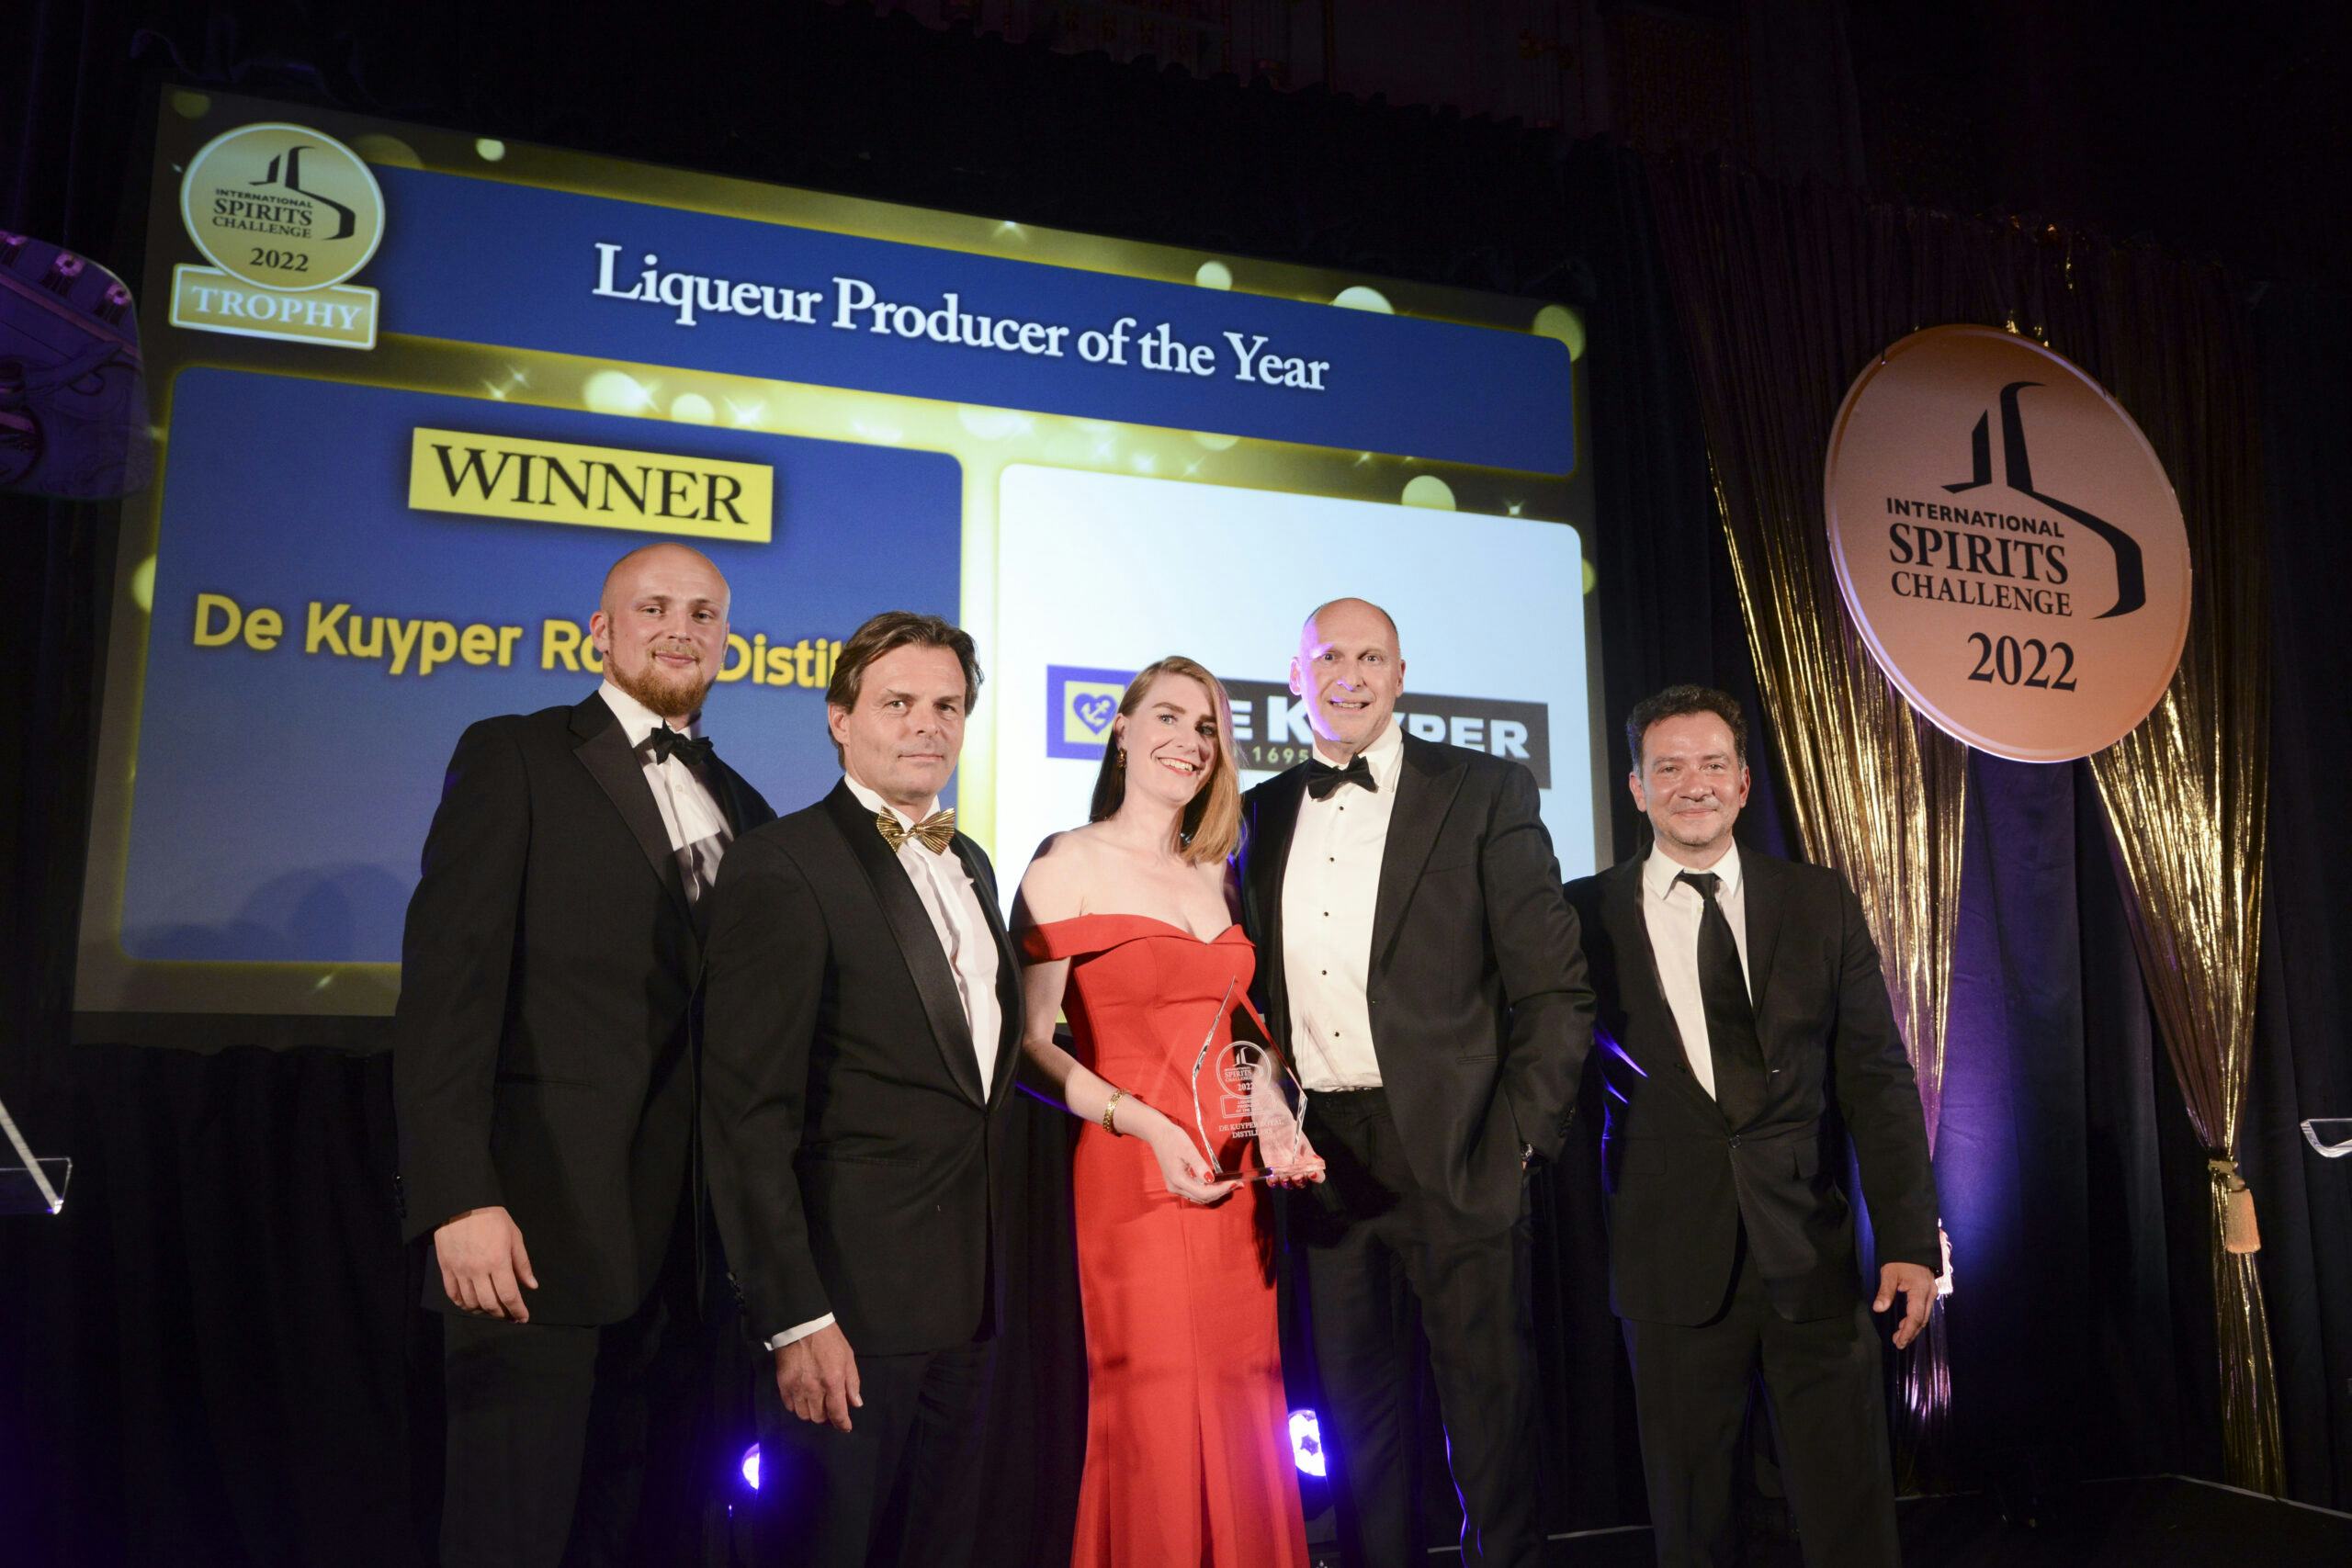 De Kuyper voor vierde jaar op rij 'Liqueur Producer of the Year'